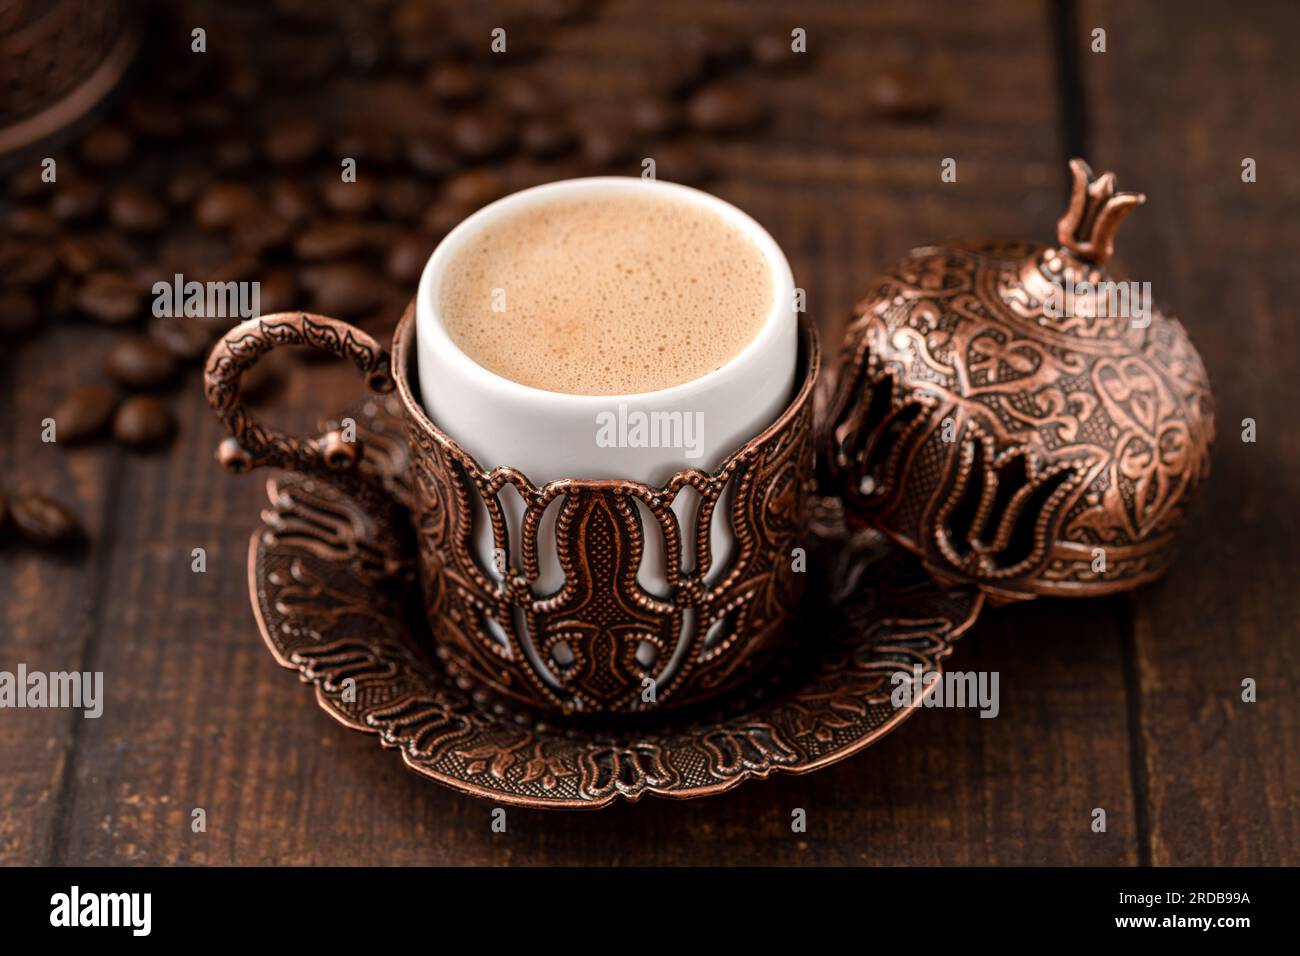 Café turc dans une tasse de café classique avec eau et délice turc sur une table en bois Banque D'Images